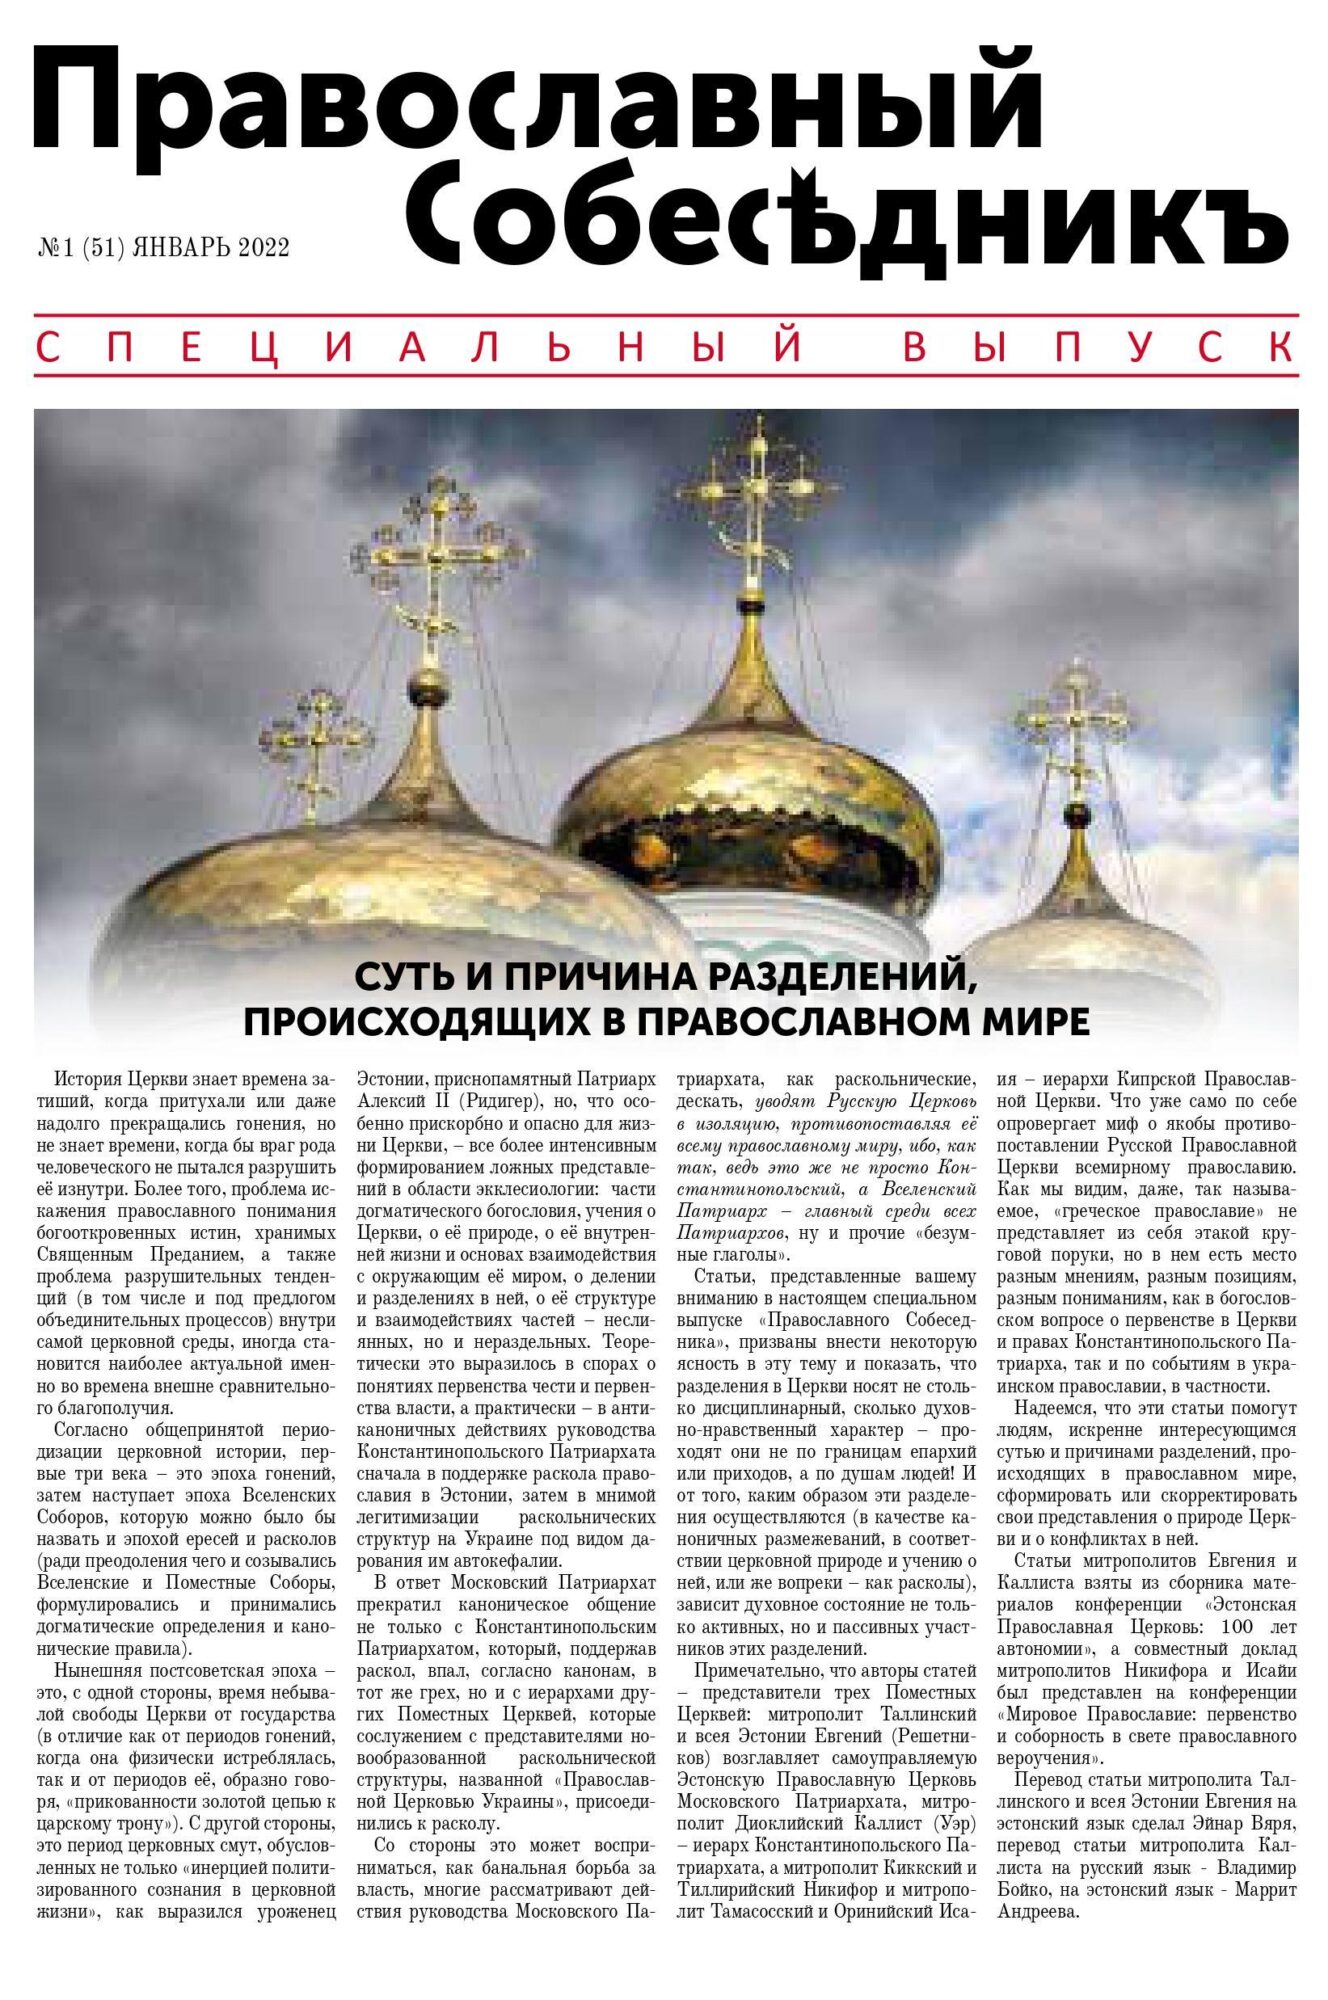 Православный Собеседник, январь 2022. Специальный выпуск. Обложка